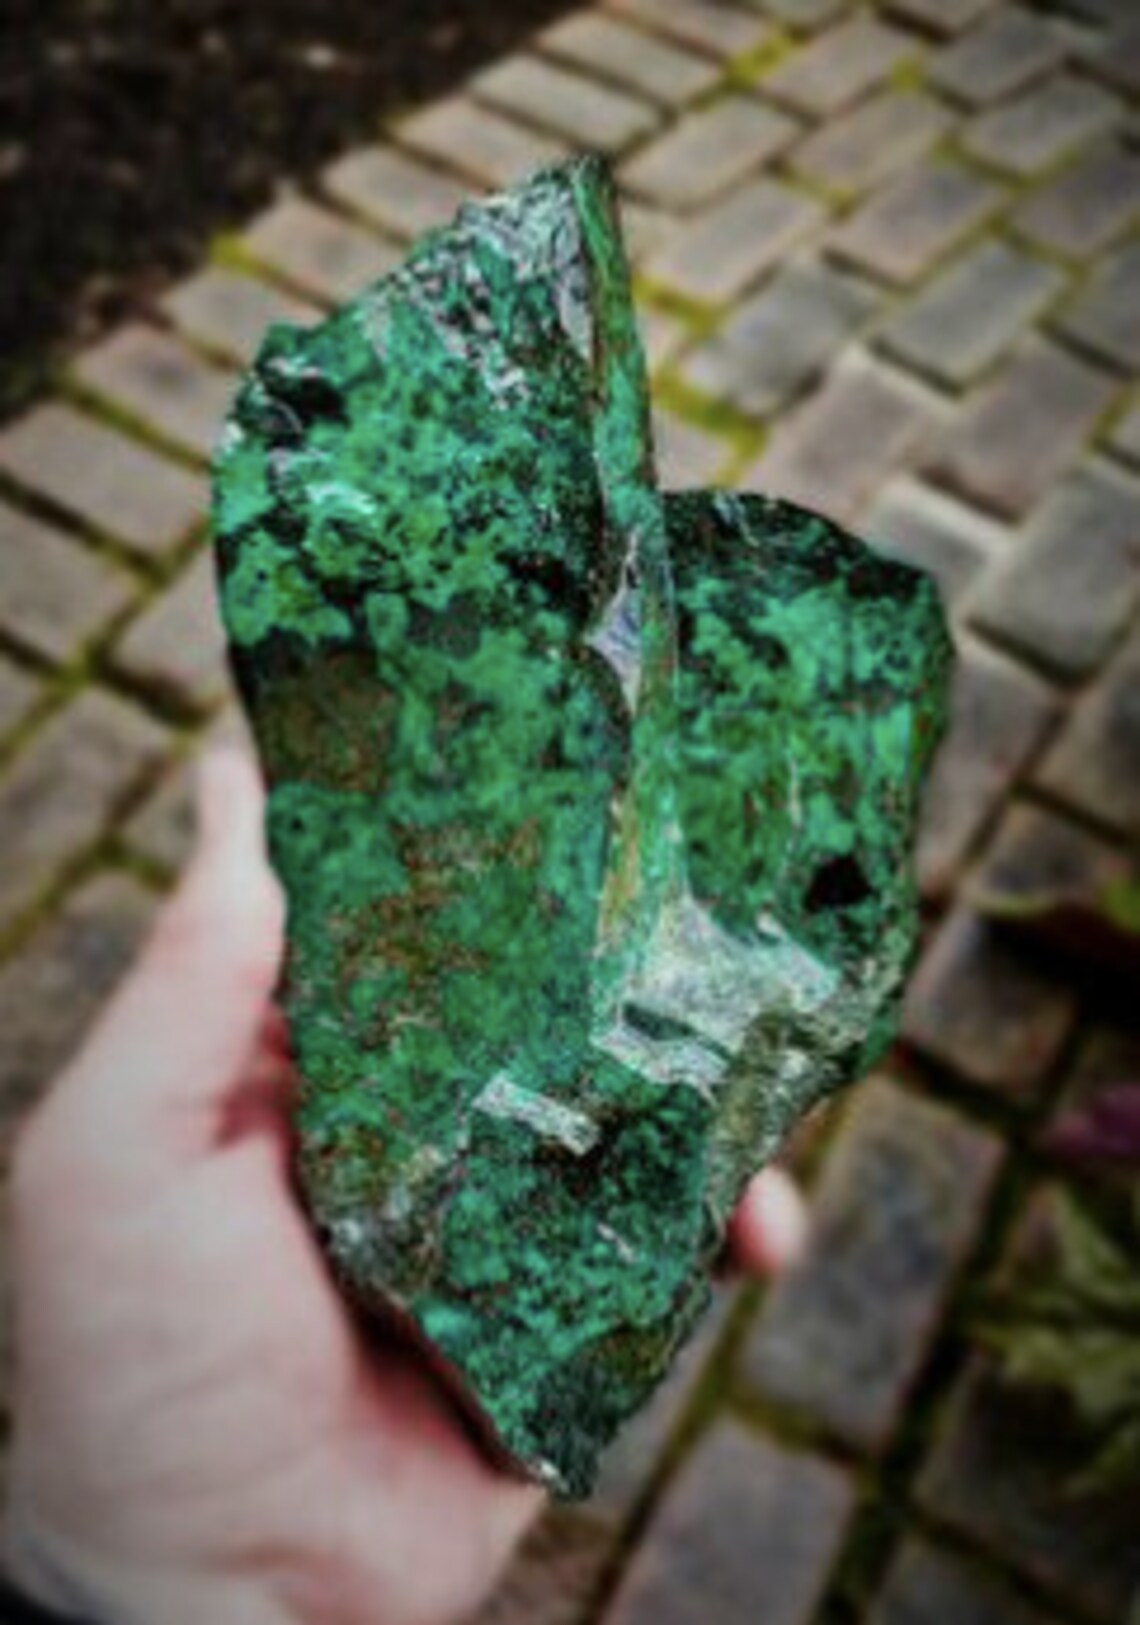 Malachite ~ Raw Fibrous African Malachite Crystal